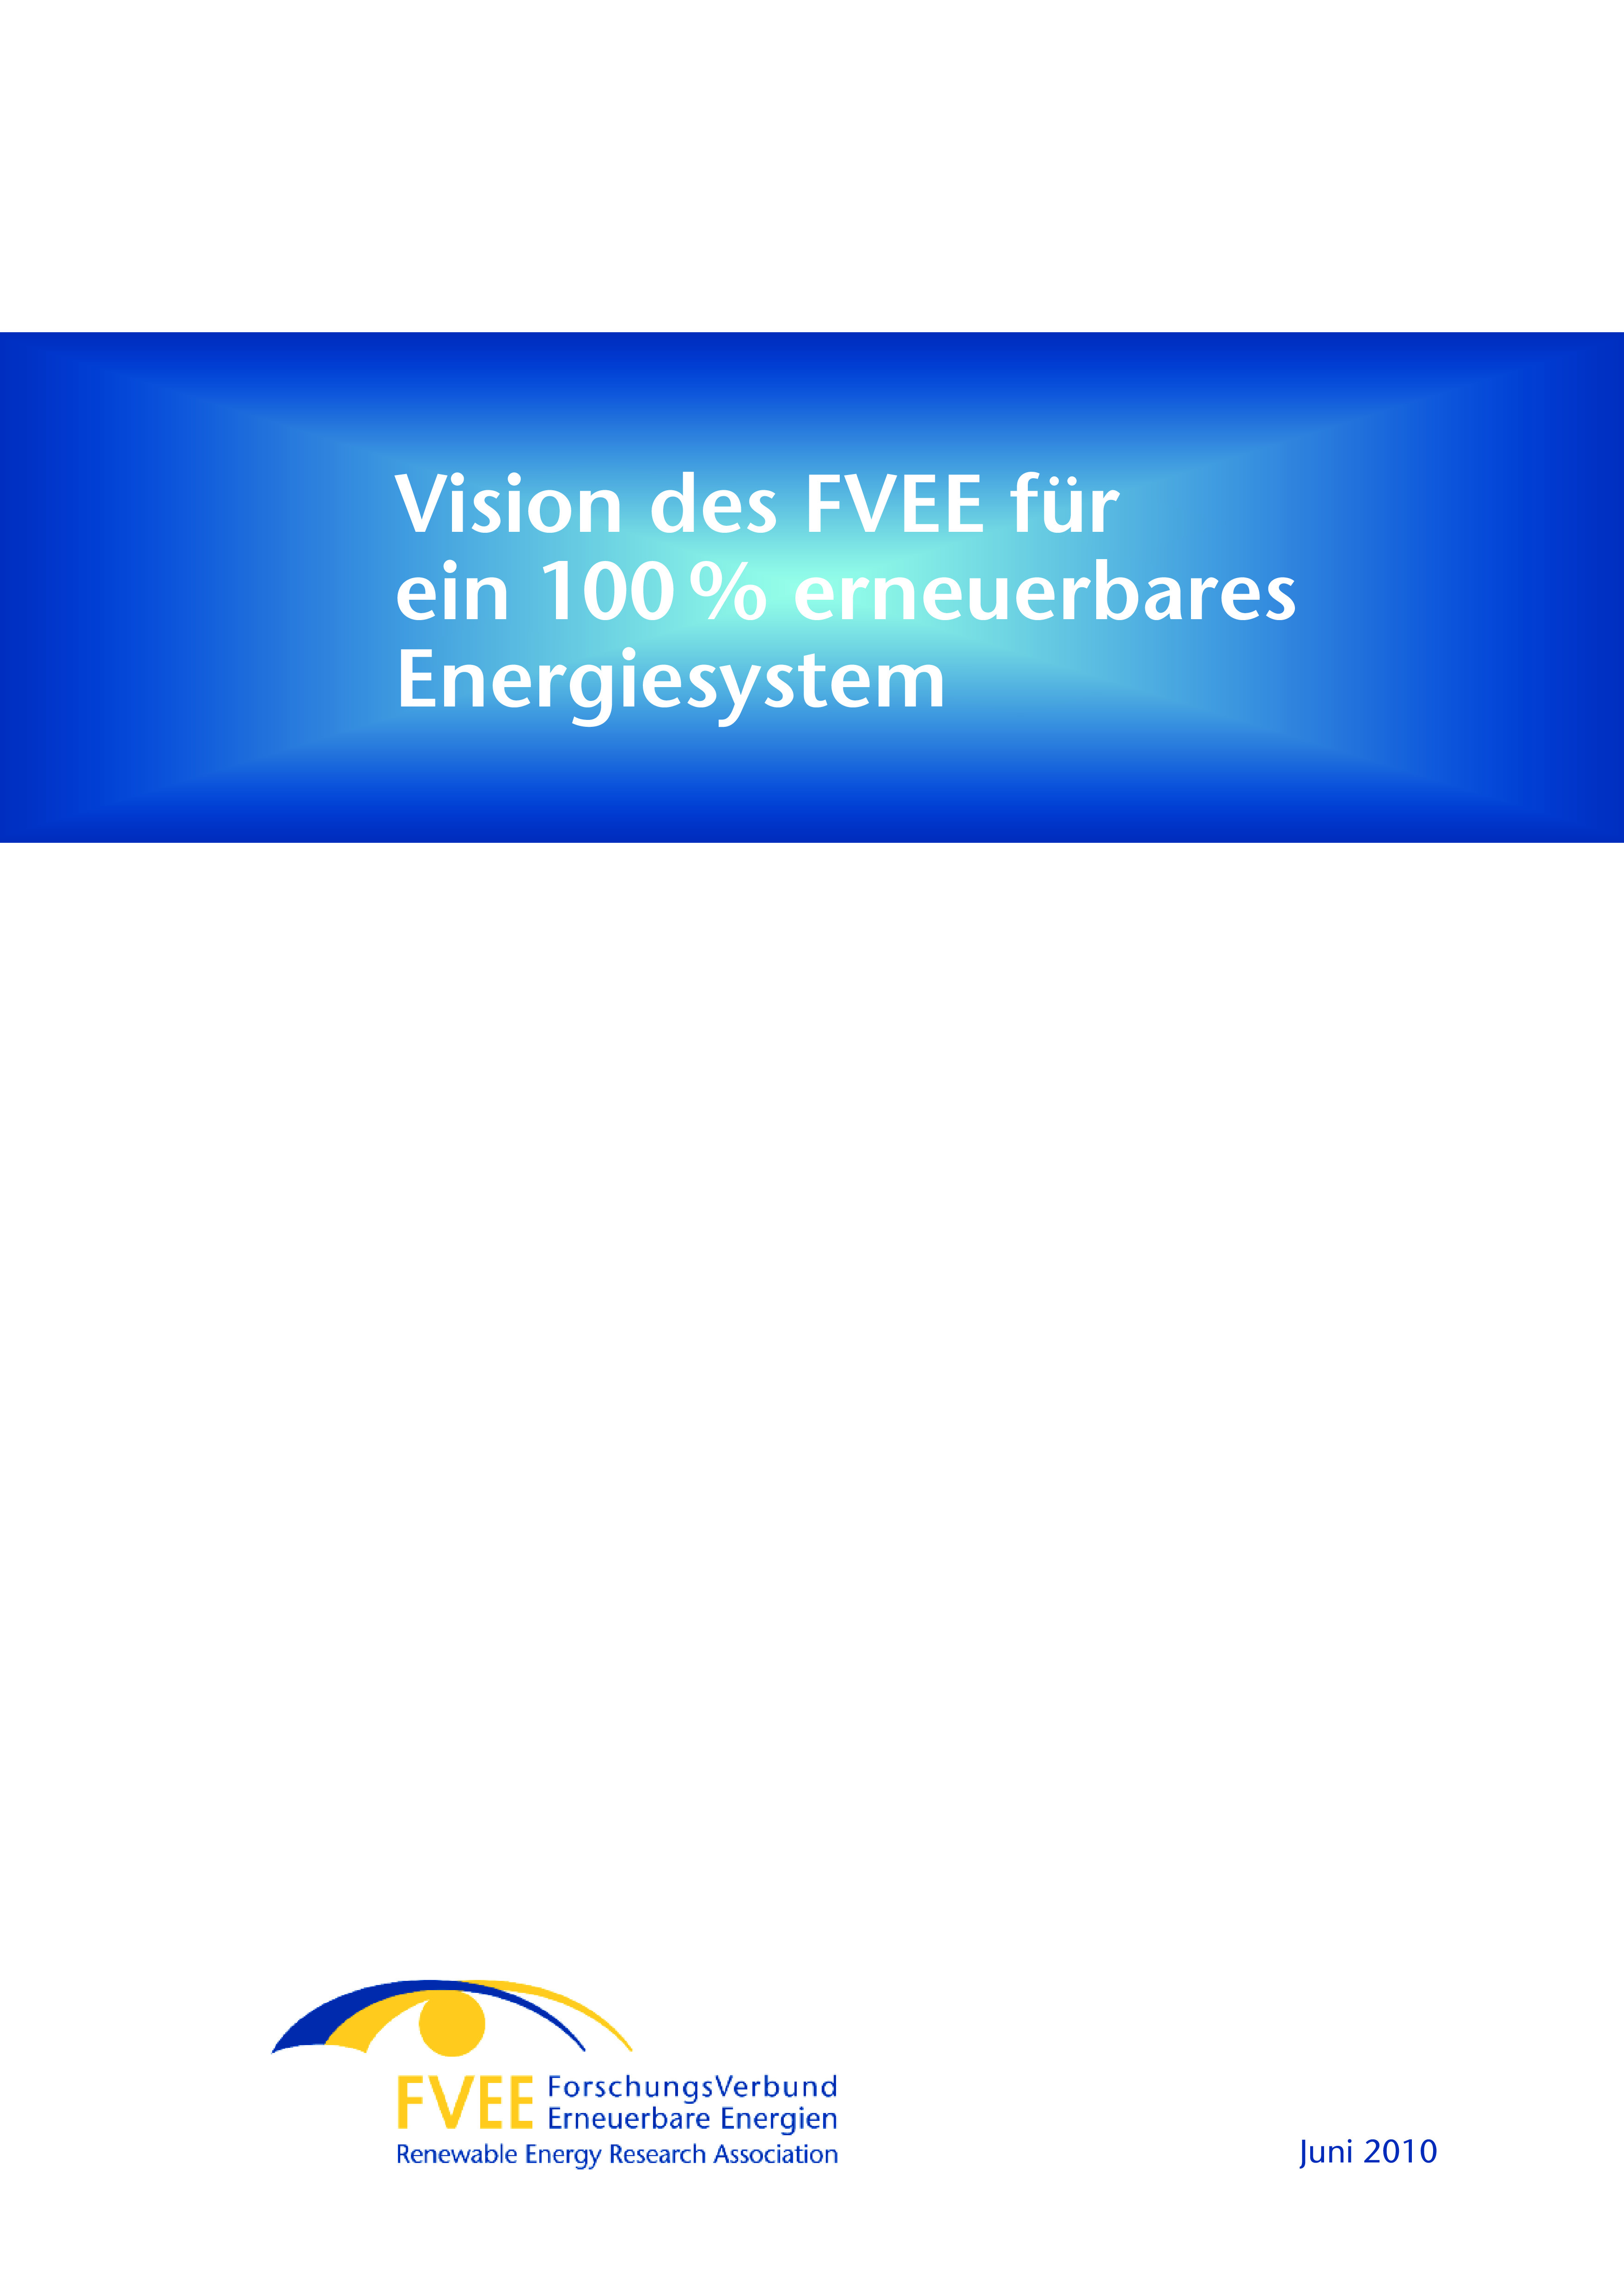 Vision des FVEE für ein 100% erneuerbares Energiesystem